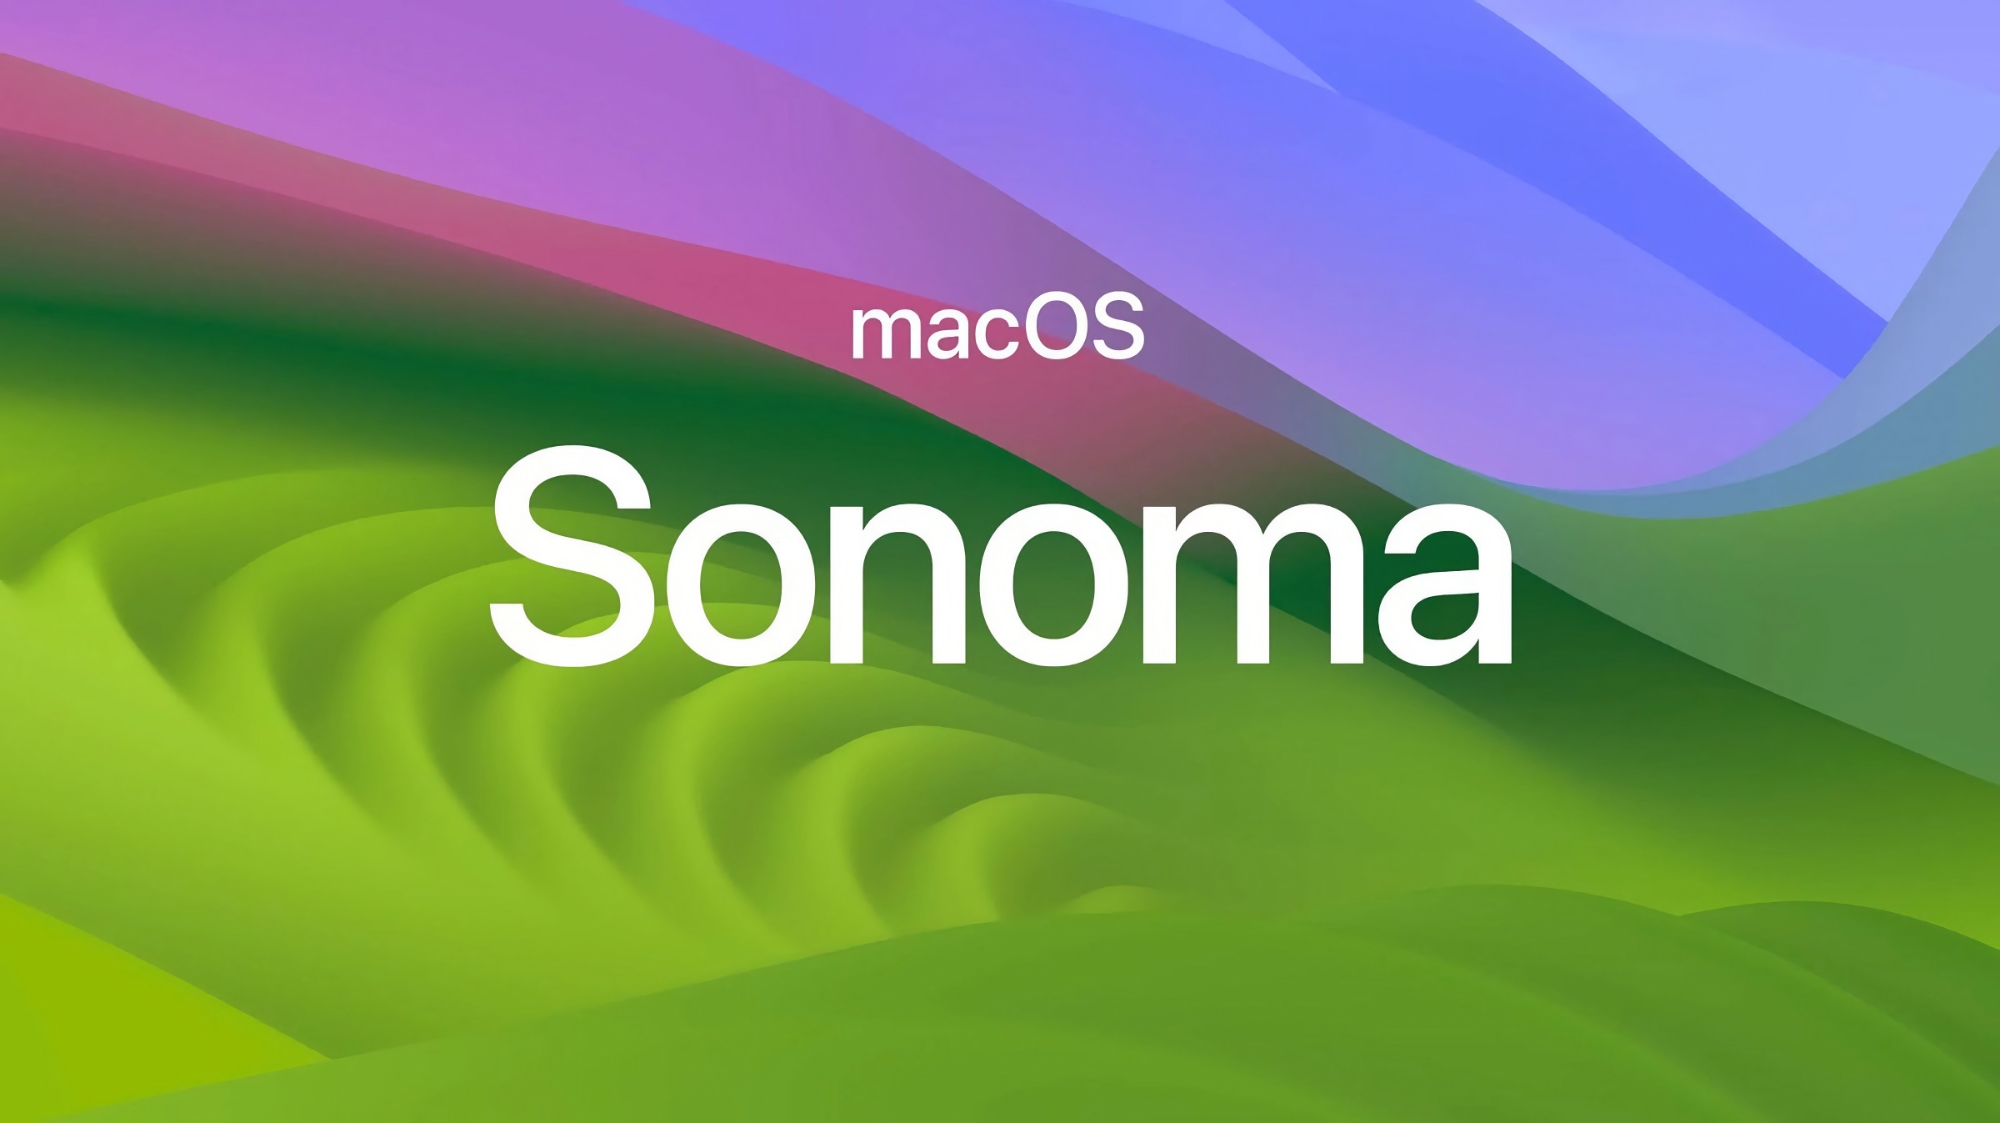 Po publicznej becie iOS 17: Apple uruchomiło testy macOS Sonoma, aby każdy mógł je wypróbować